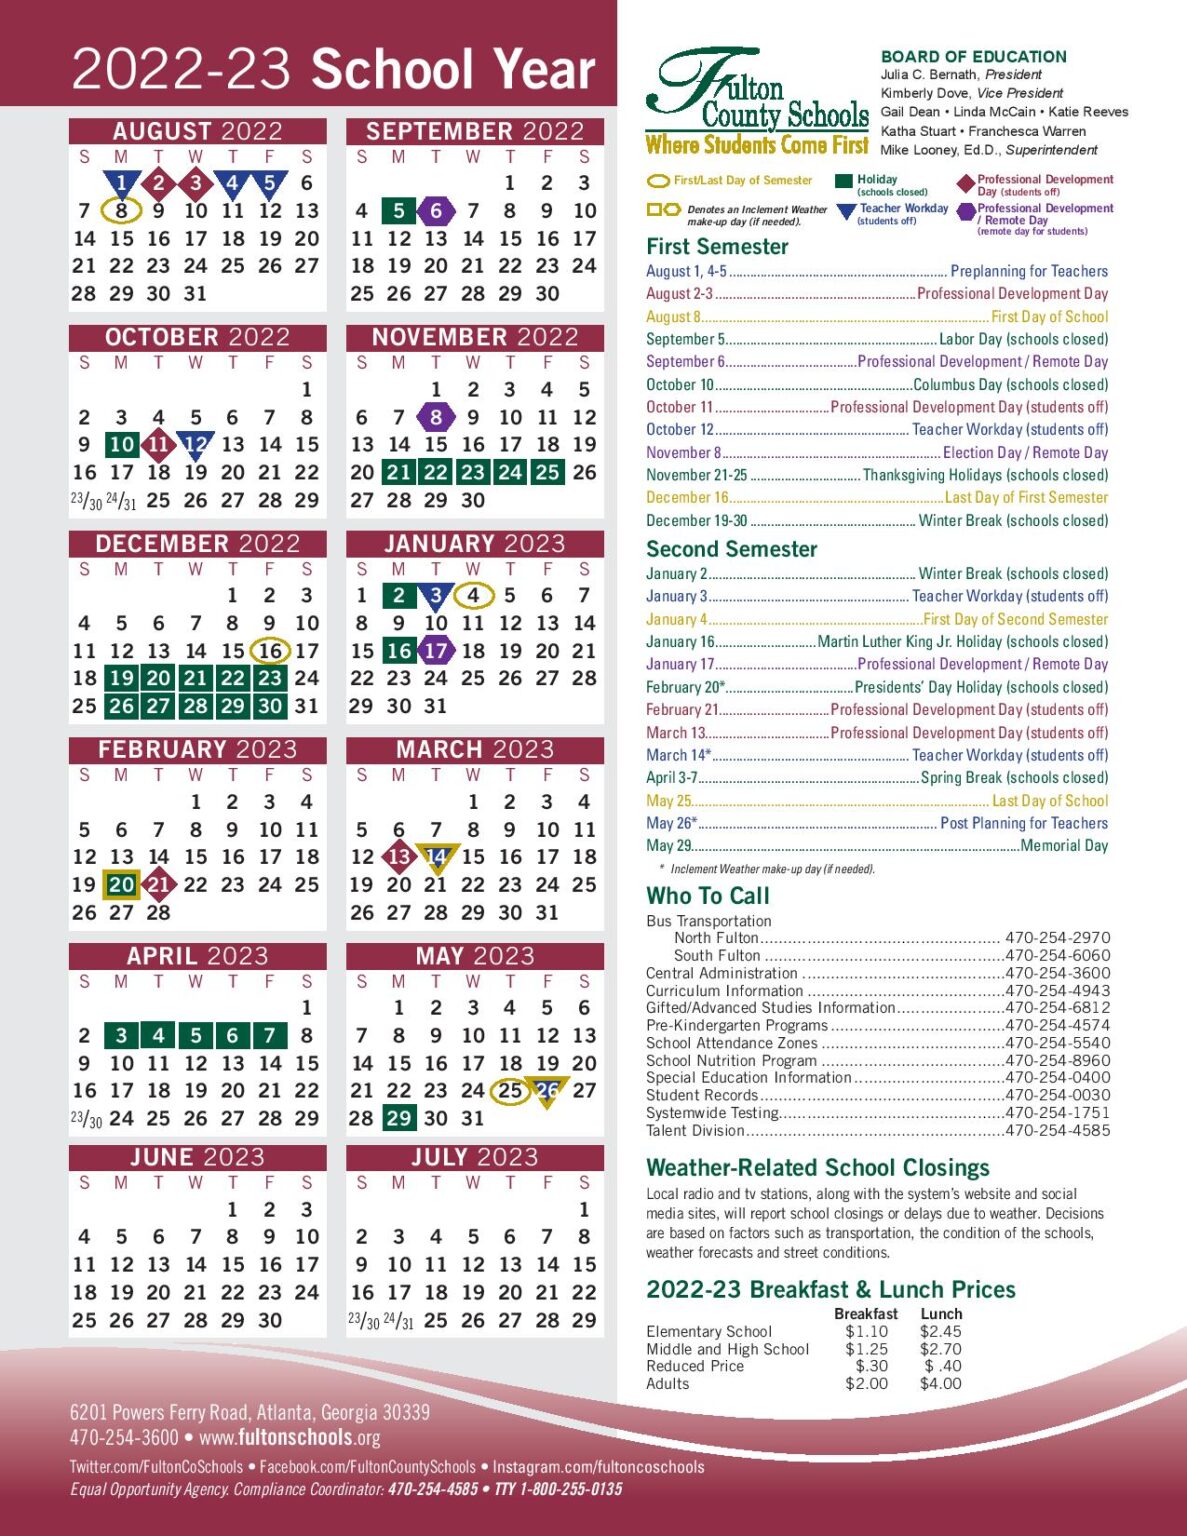 fulton-county-schools-calendar-holidays-2022-2023-pdf